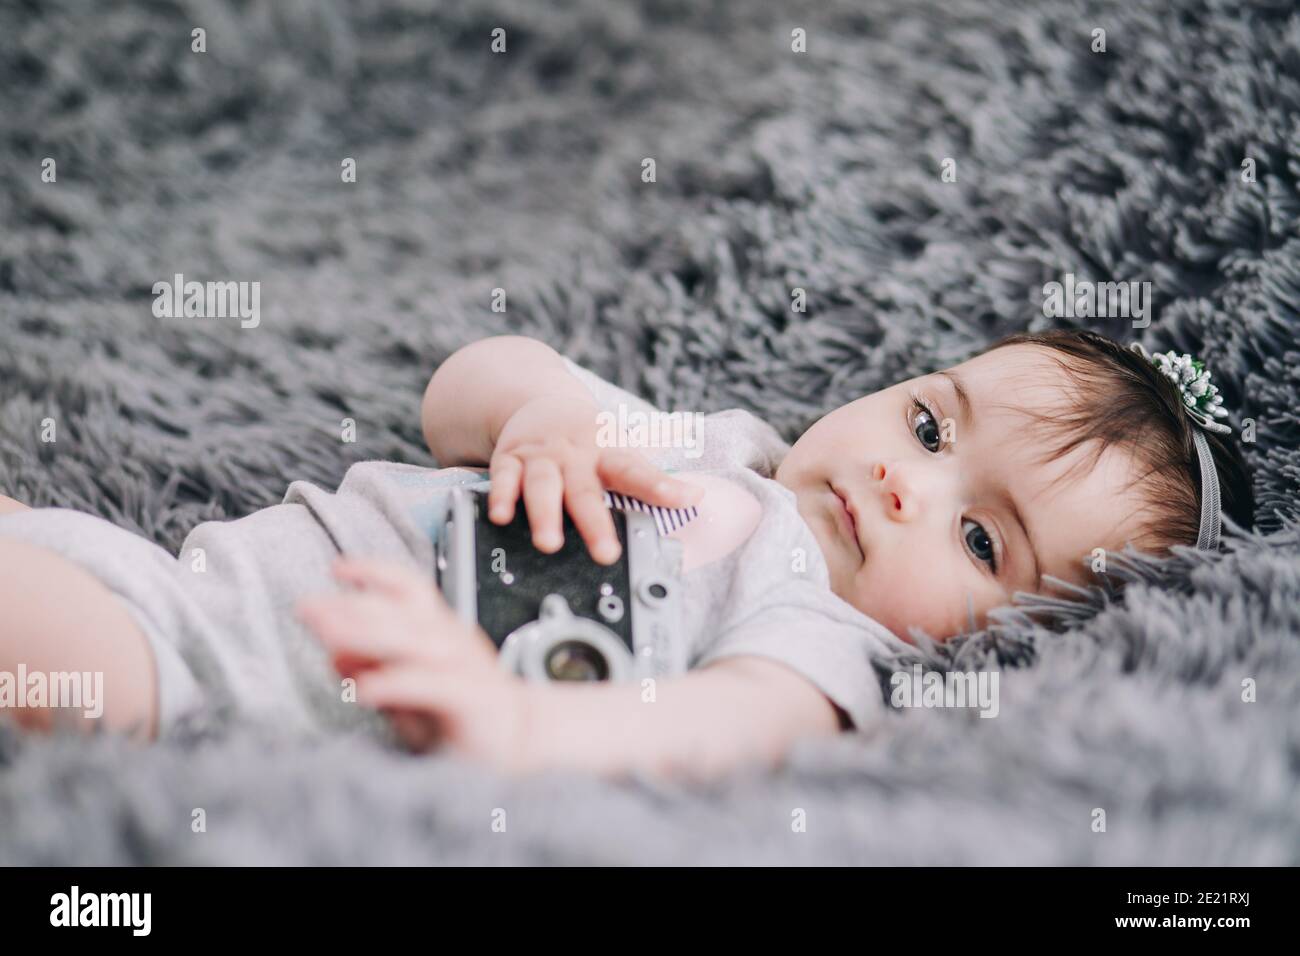 Closeup di carino, adorabile bambino che tiene reflex fotocamera vintage film Foto Stock